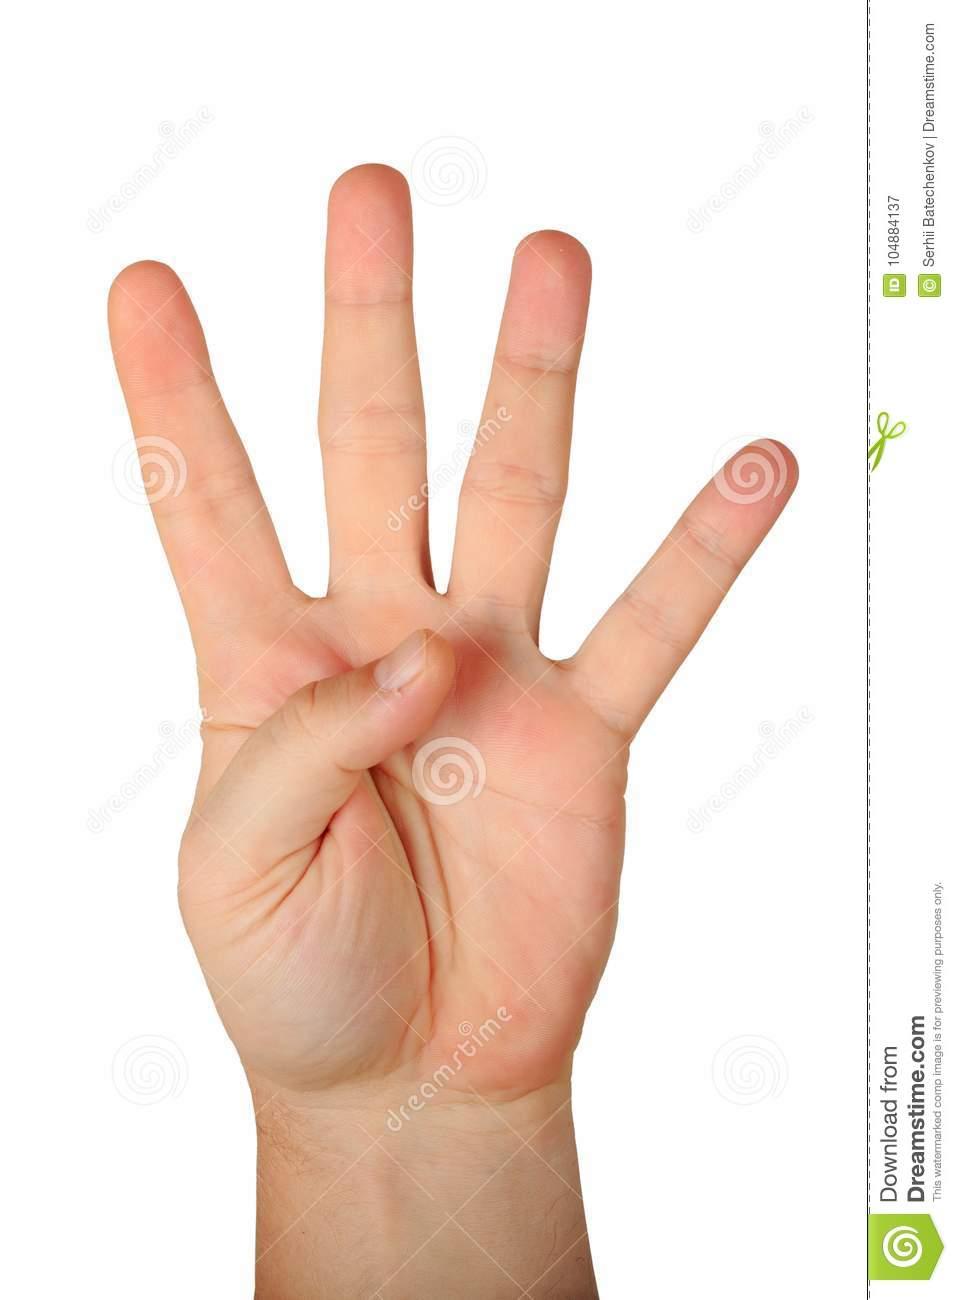 Что означает 4 пальца без большого?